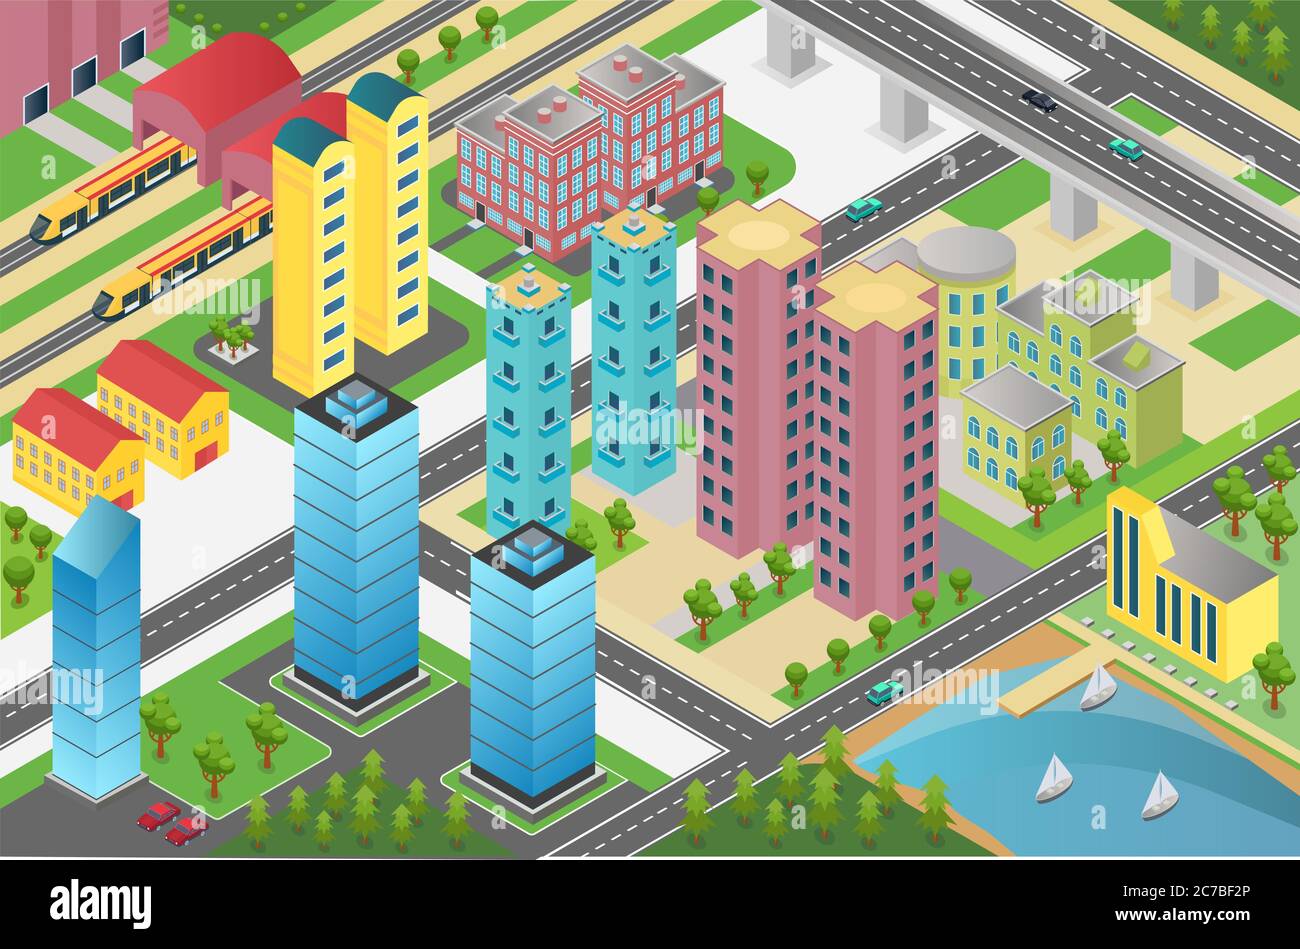 Isometrische Gestaltung des Stadtteils mit Wohngebäuden und Einrichtungen auf der Karte Stock Vektor